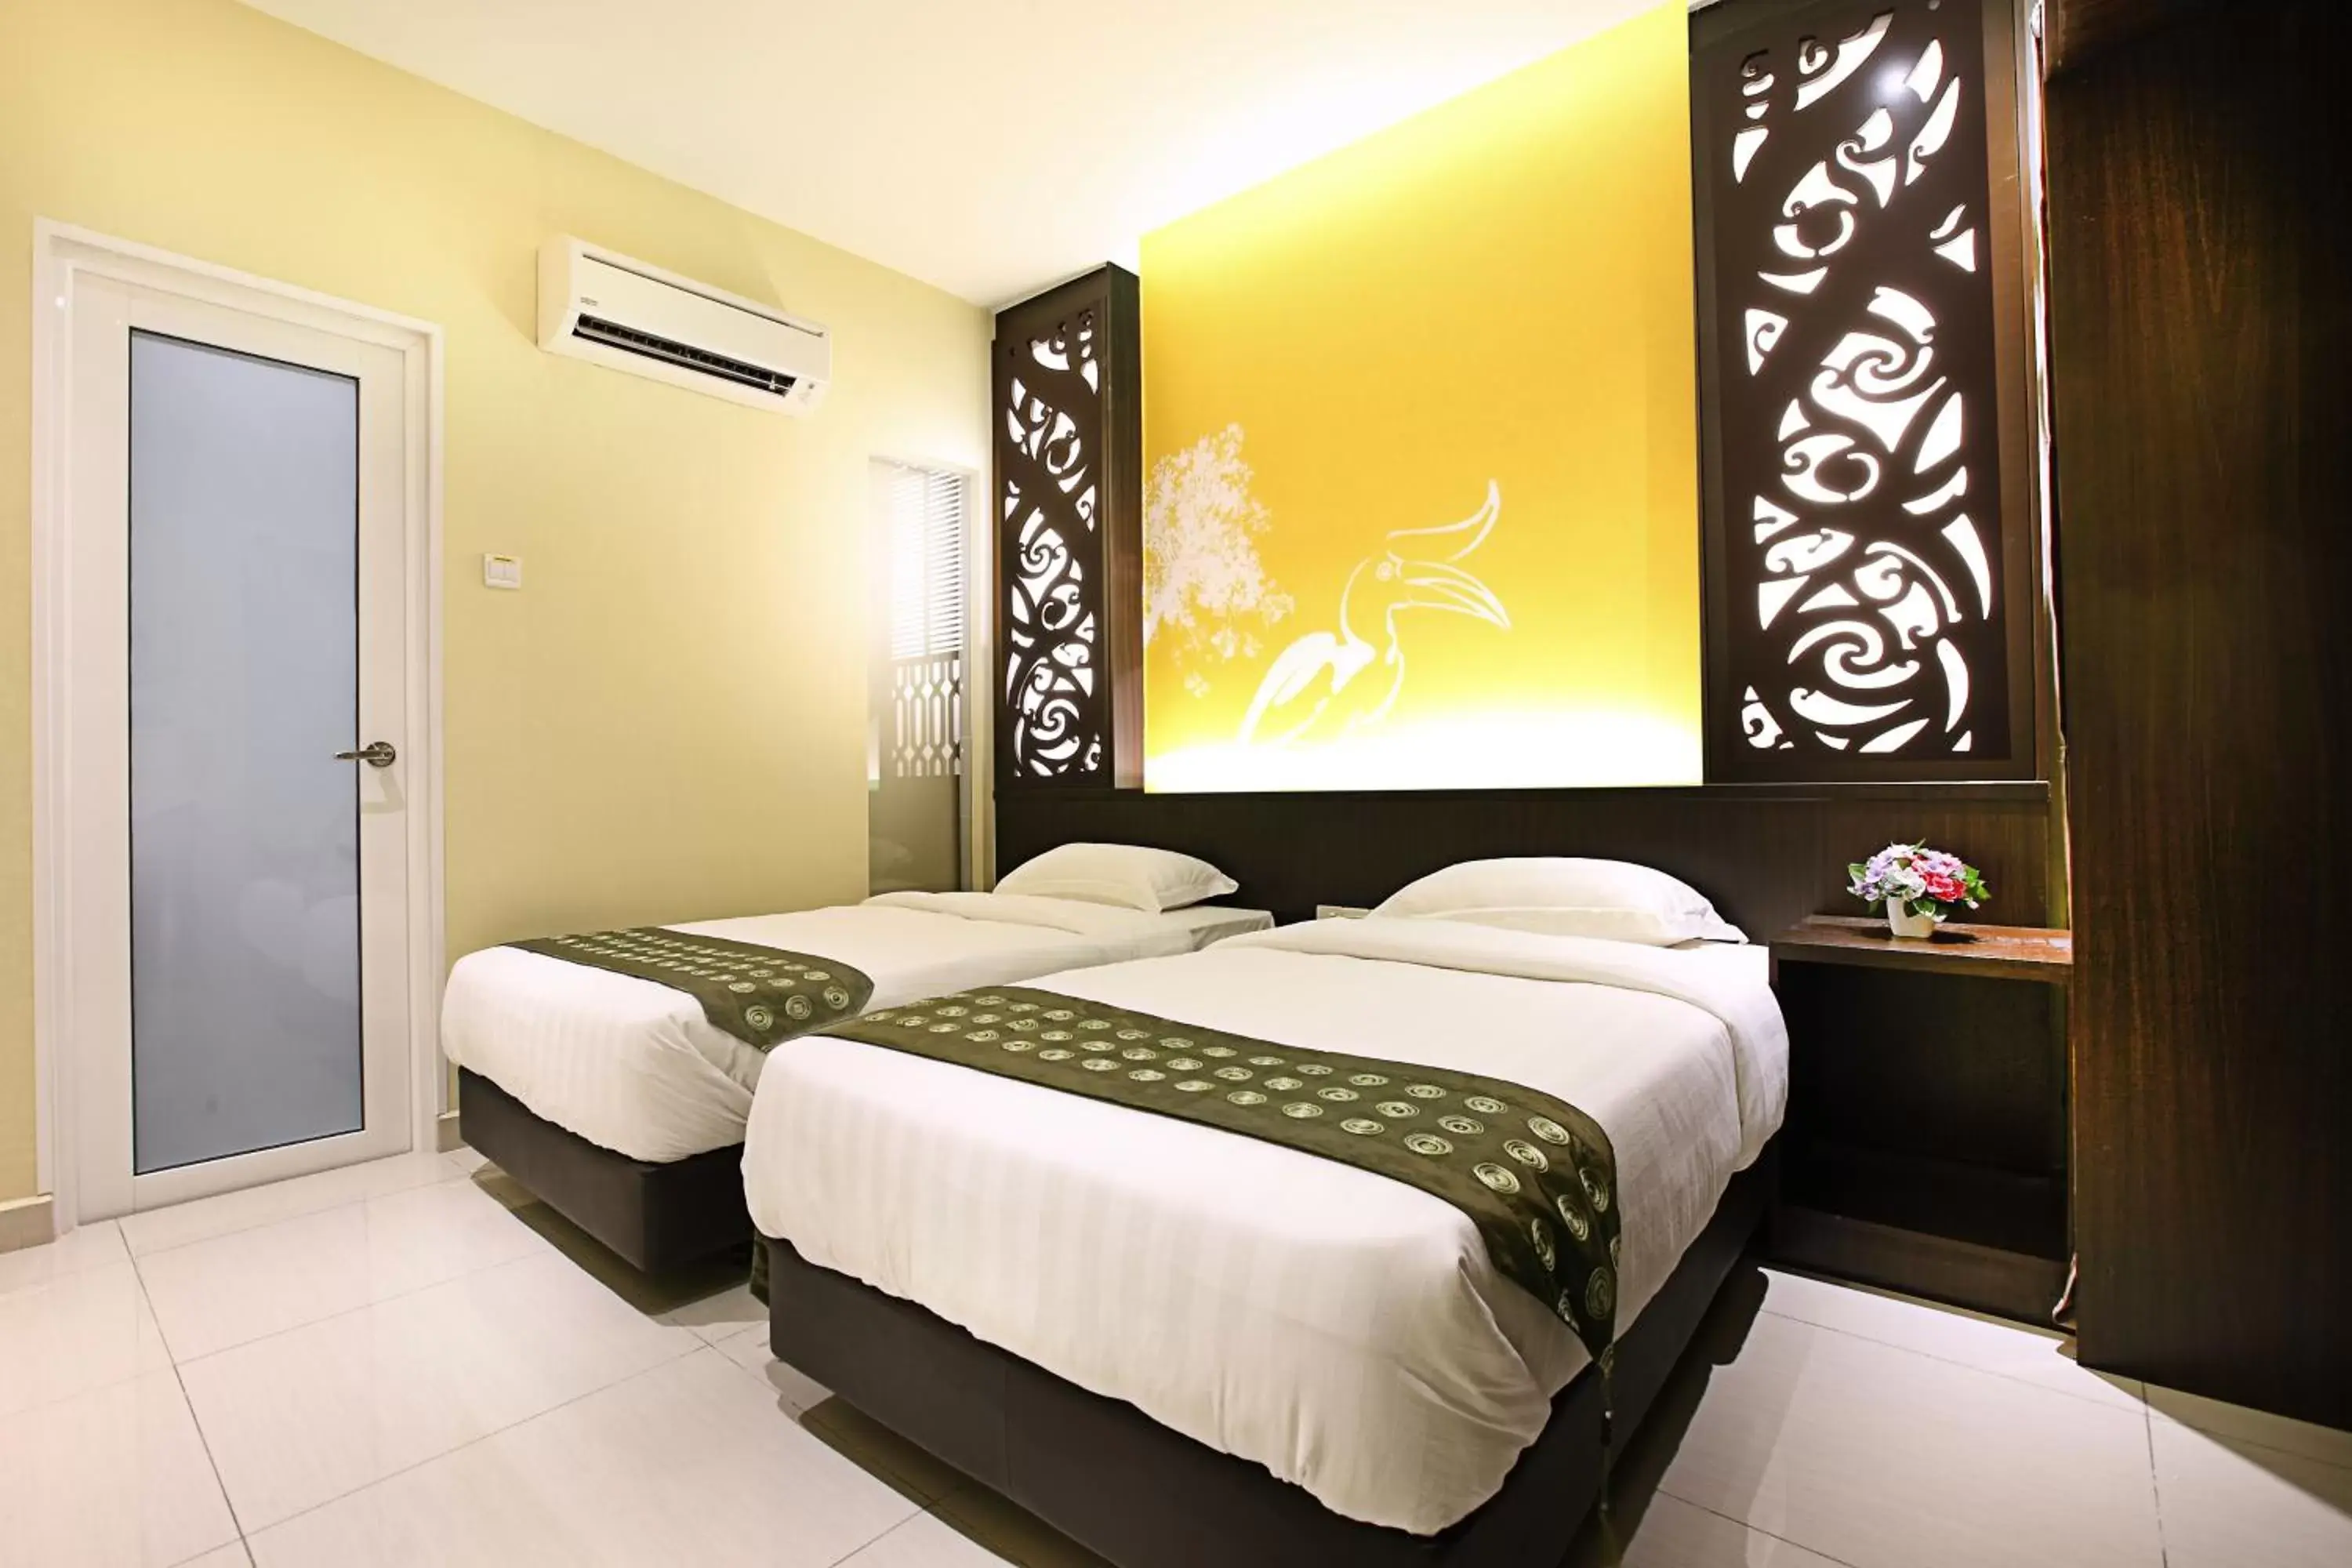 Bed in Sri Enstek Hotel KLIA, KLIA 2 & F1